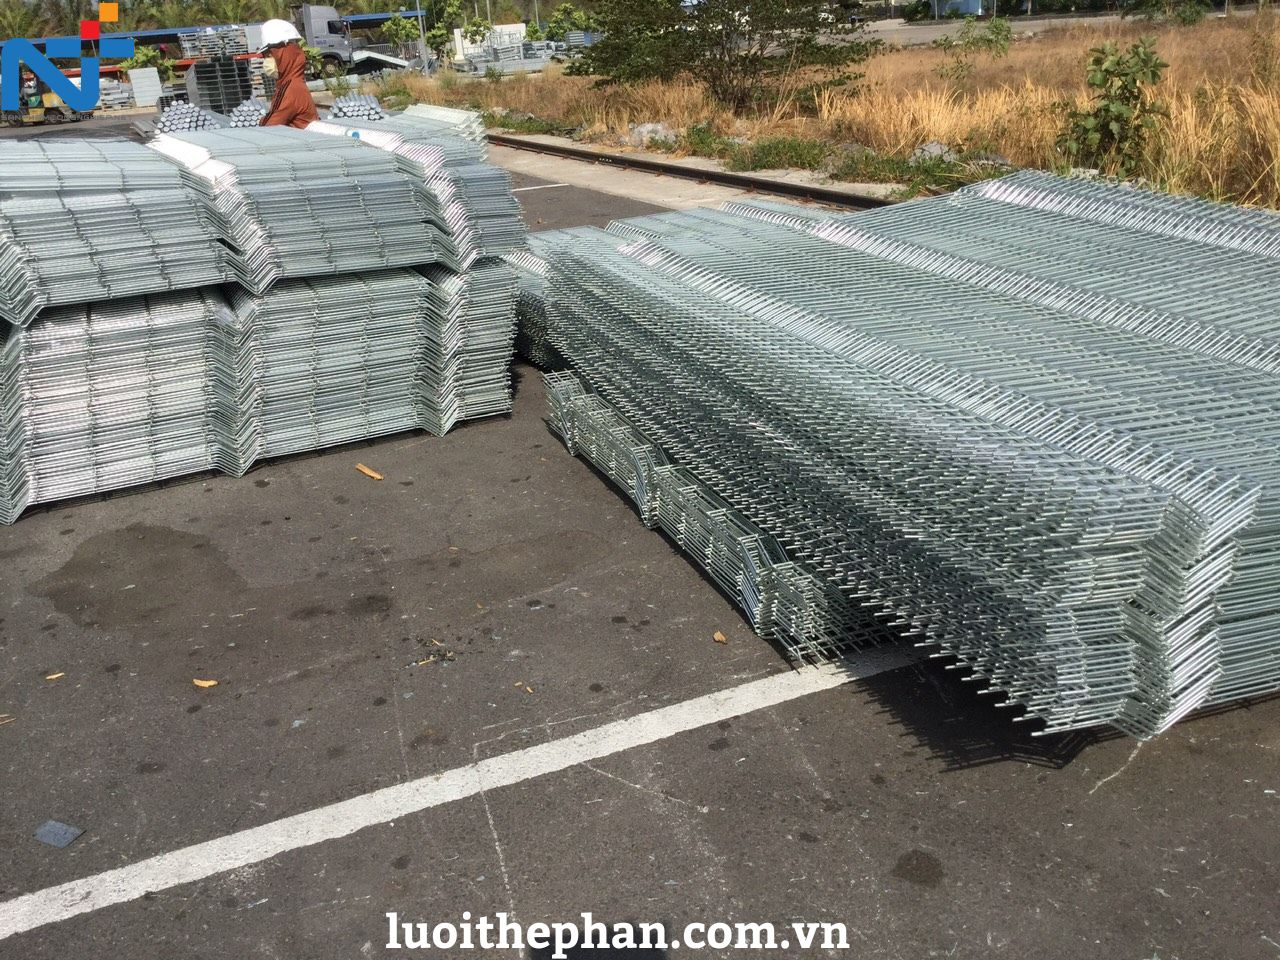 Sản xuất hàng rào lưới thép hàn theo yêu cầu